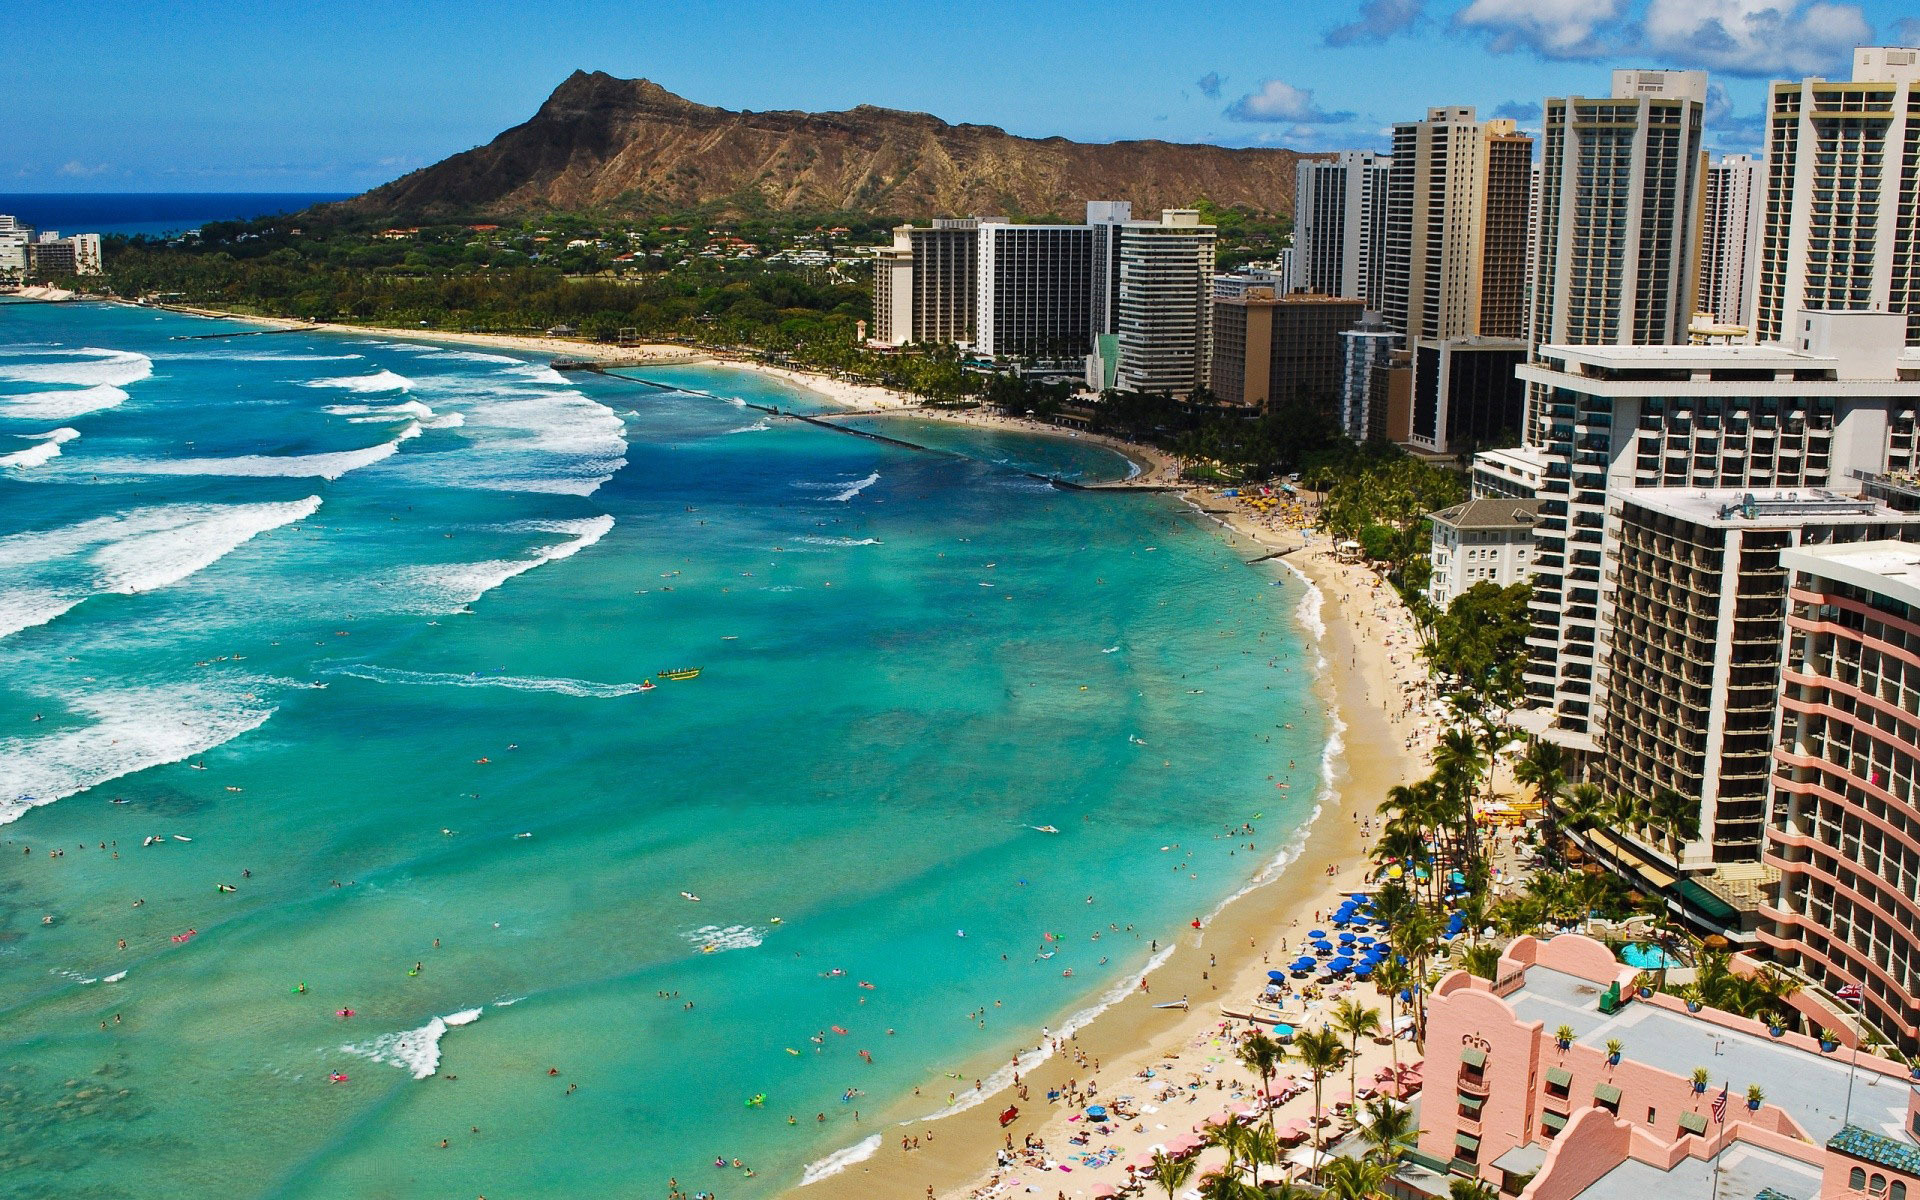 Waikiki Beach Hotel Pictures Desktop Wallpaper Image